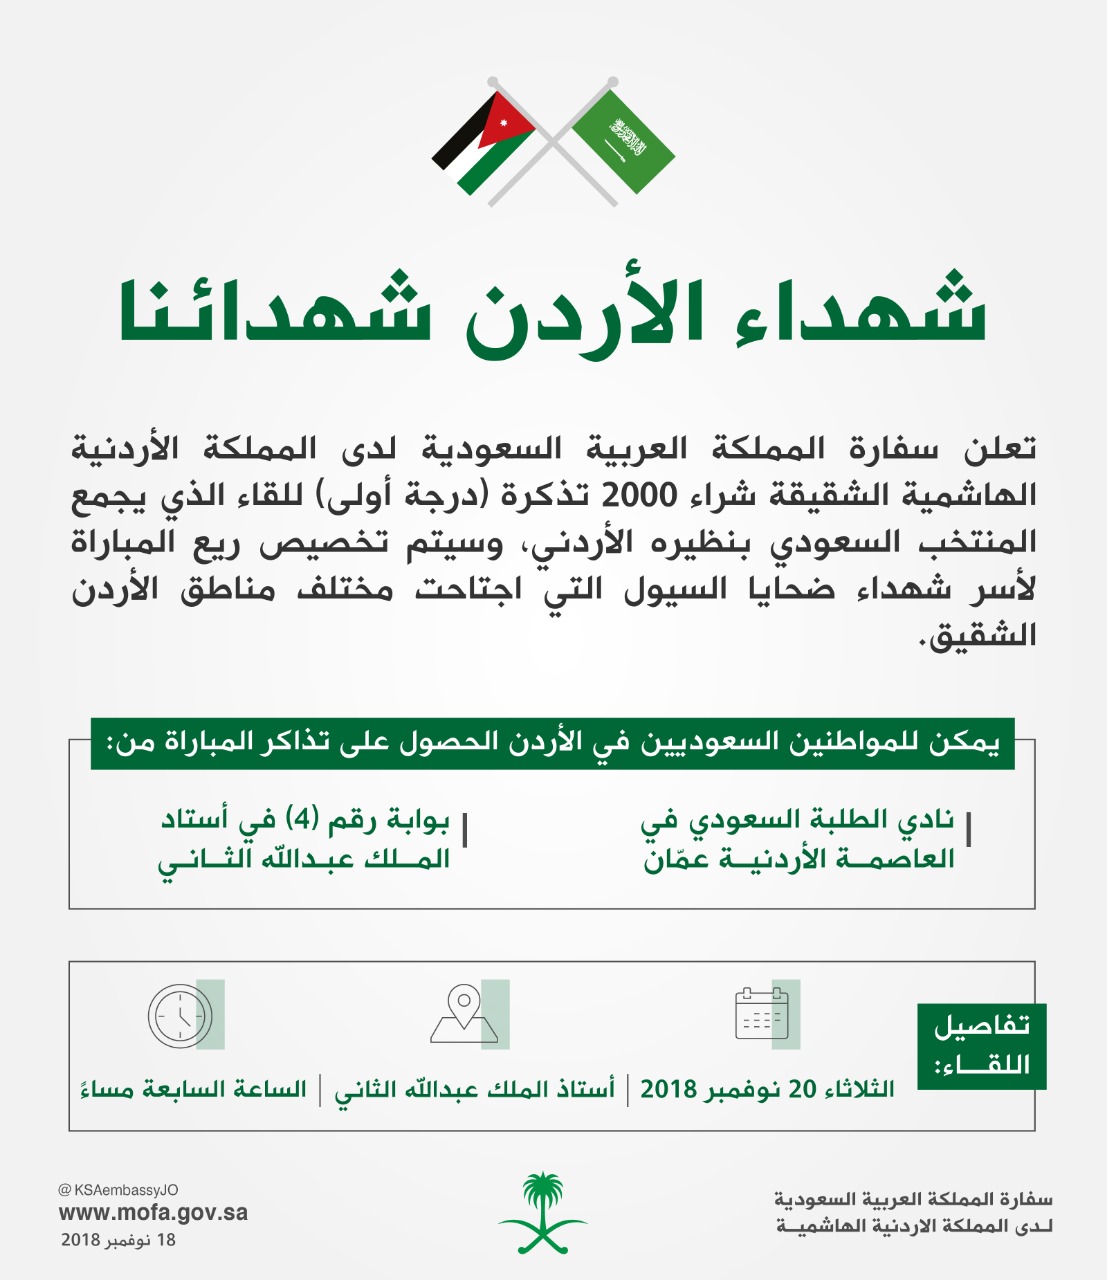 سفارة المملكة لدى الأردن تقوم بشراء ٢٠٠٠ تذكرة (درجة أولى) لمواطنيها في الأردن، دعما لشهداء الأردن من ضحايا السيول.